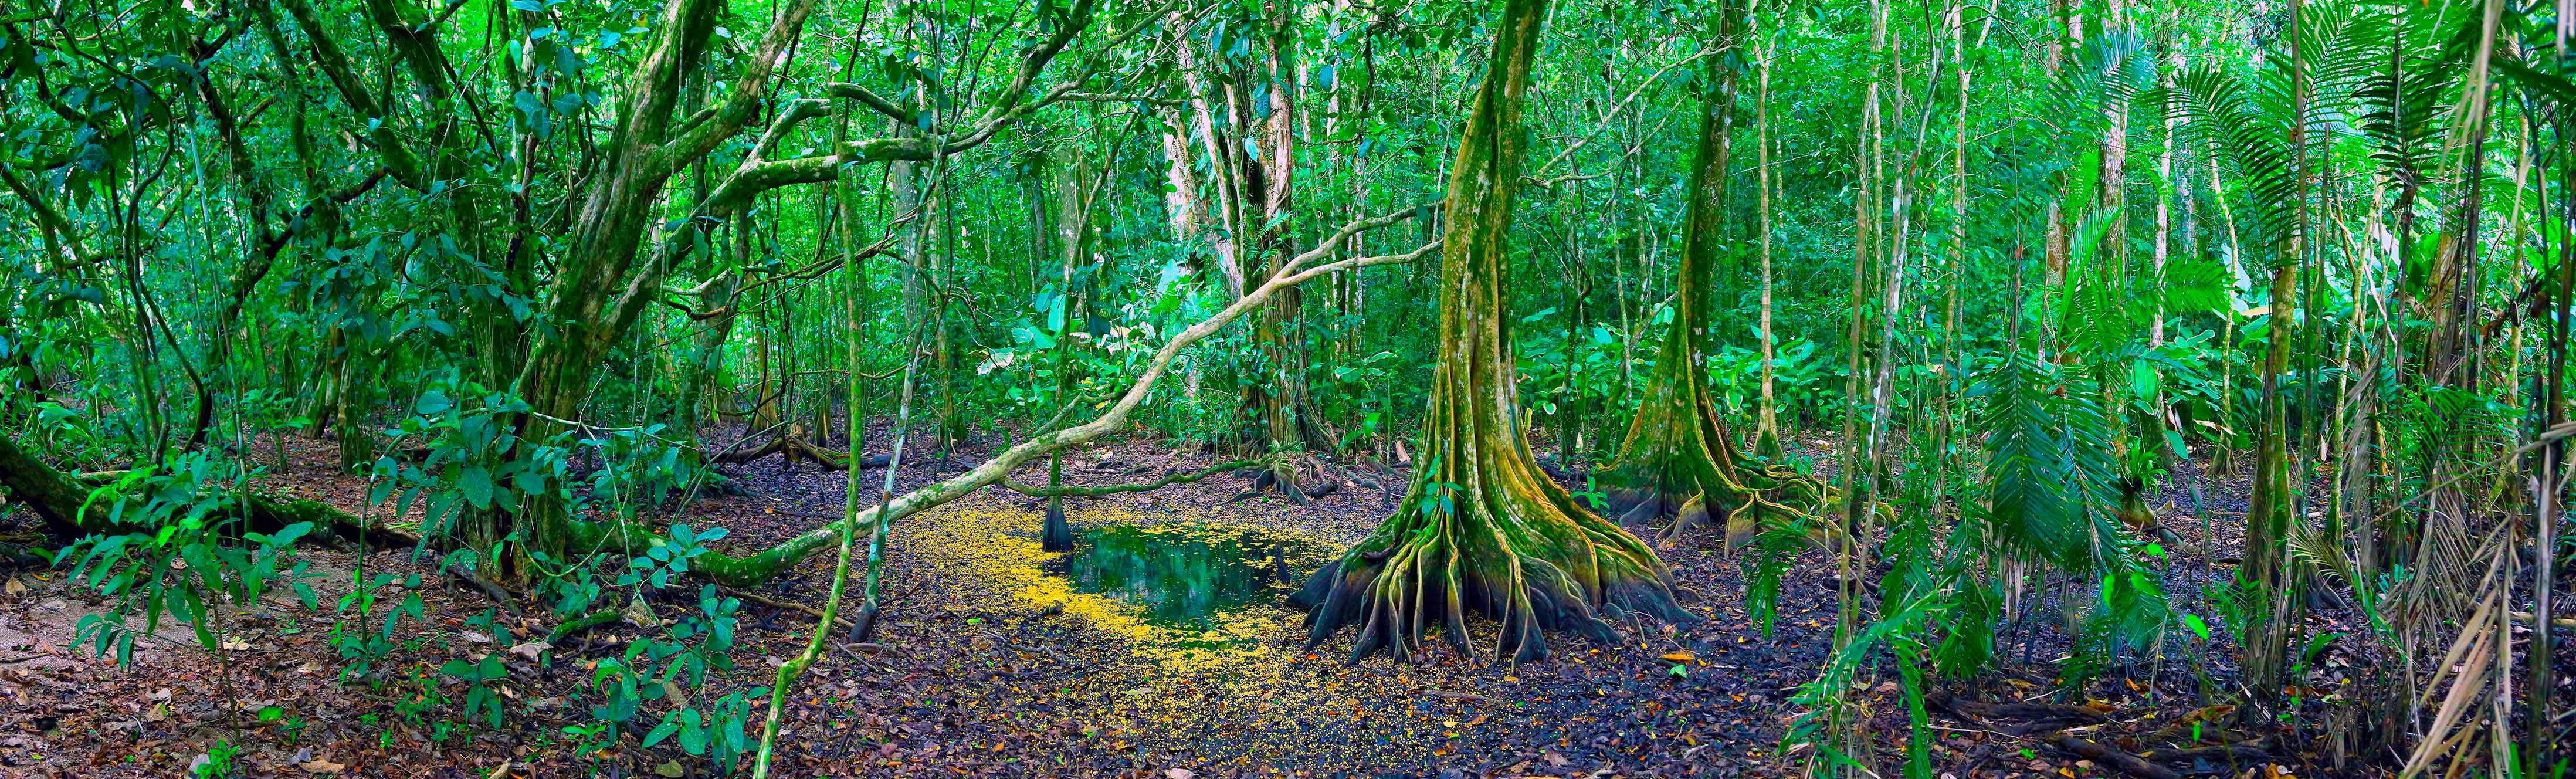 Costa Rica, donde la naturaleza en estado puro se muestra de la manera más exuberante.